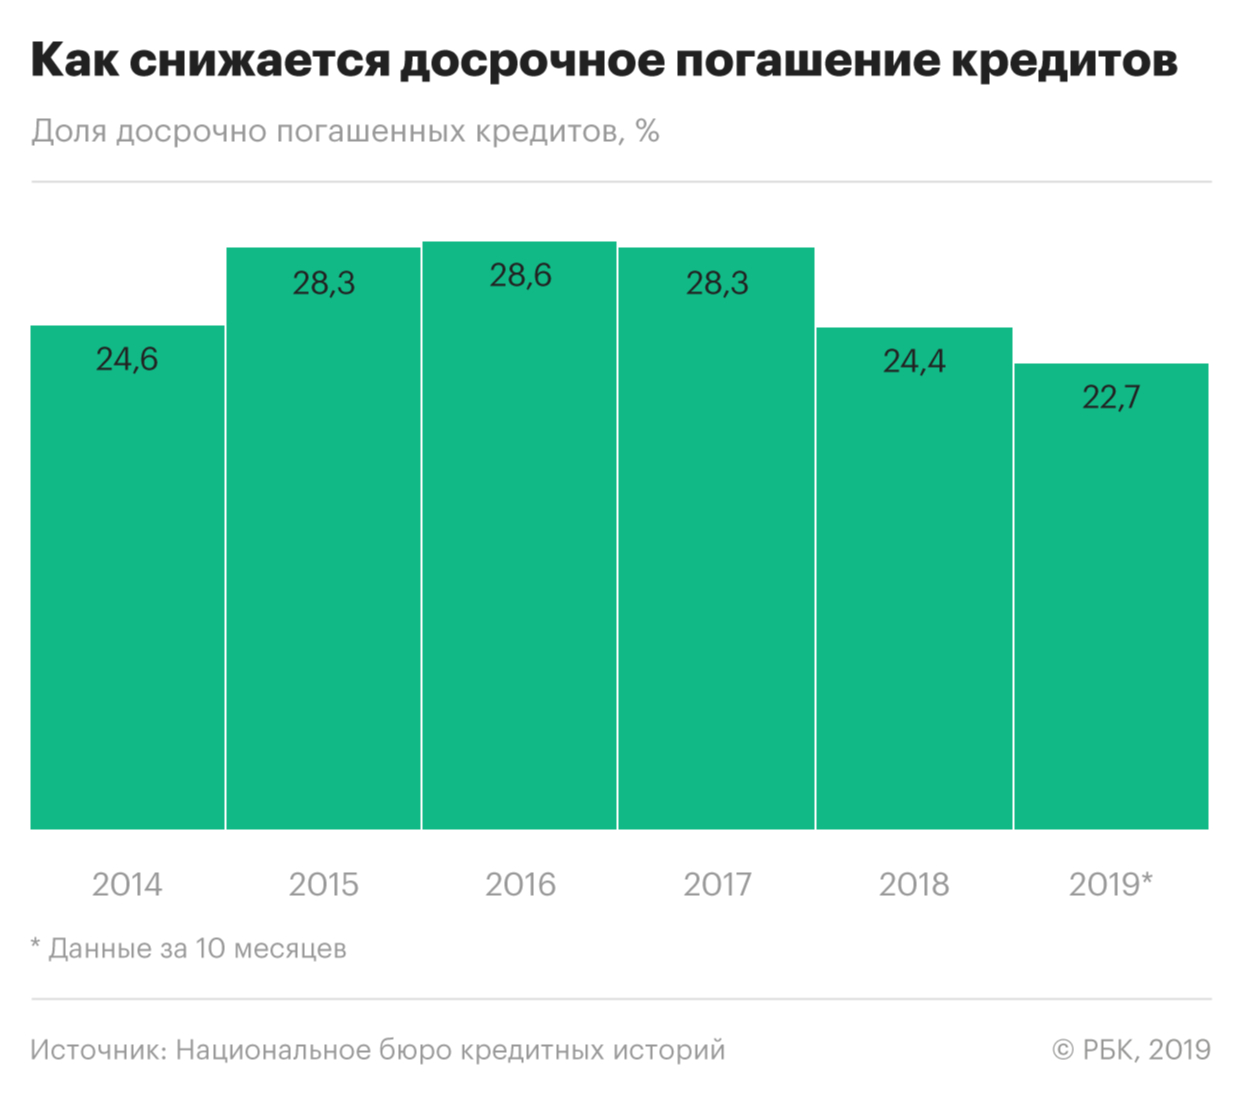 Россияне стали реже гасить кредиты досрочно